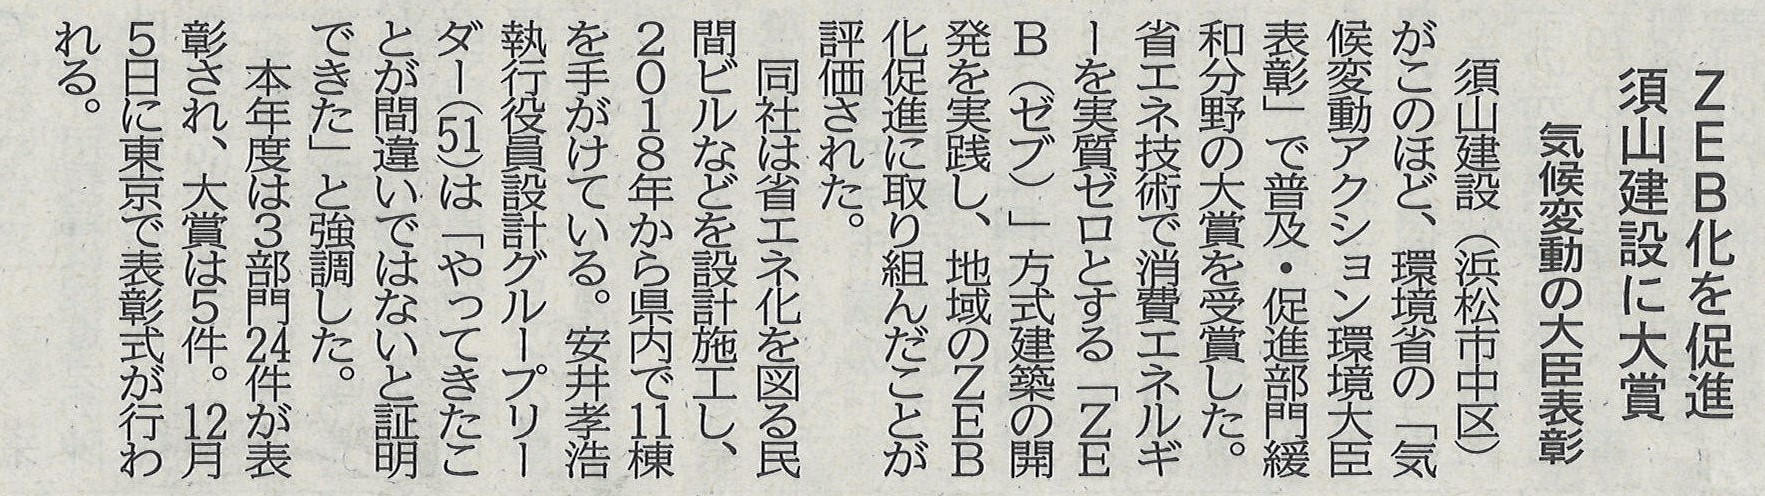 「気候変動アクション環境大臣表彰」が静岡新聞に掲載されました